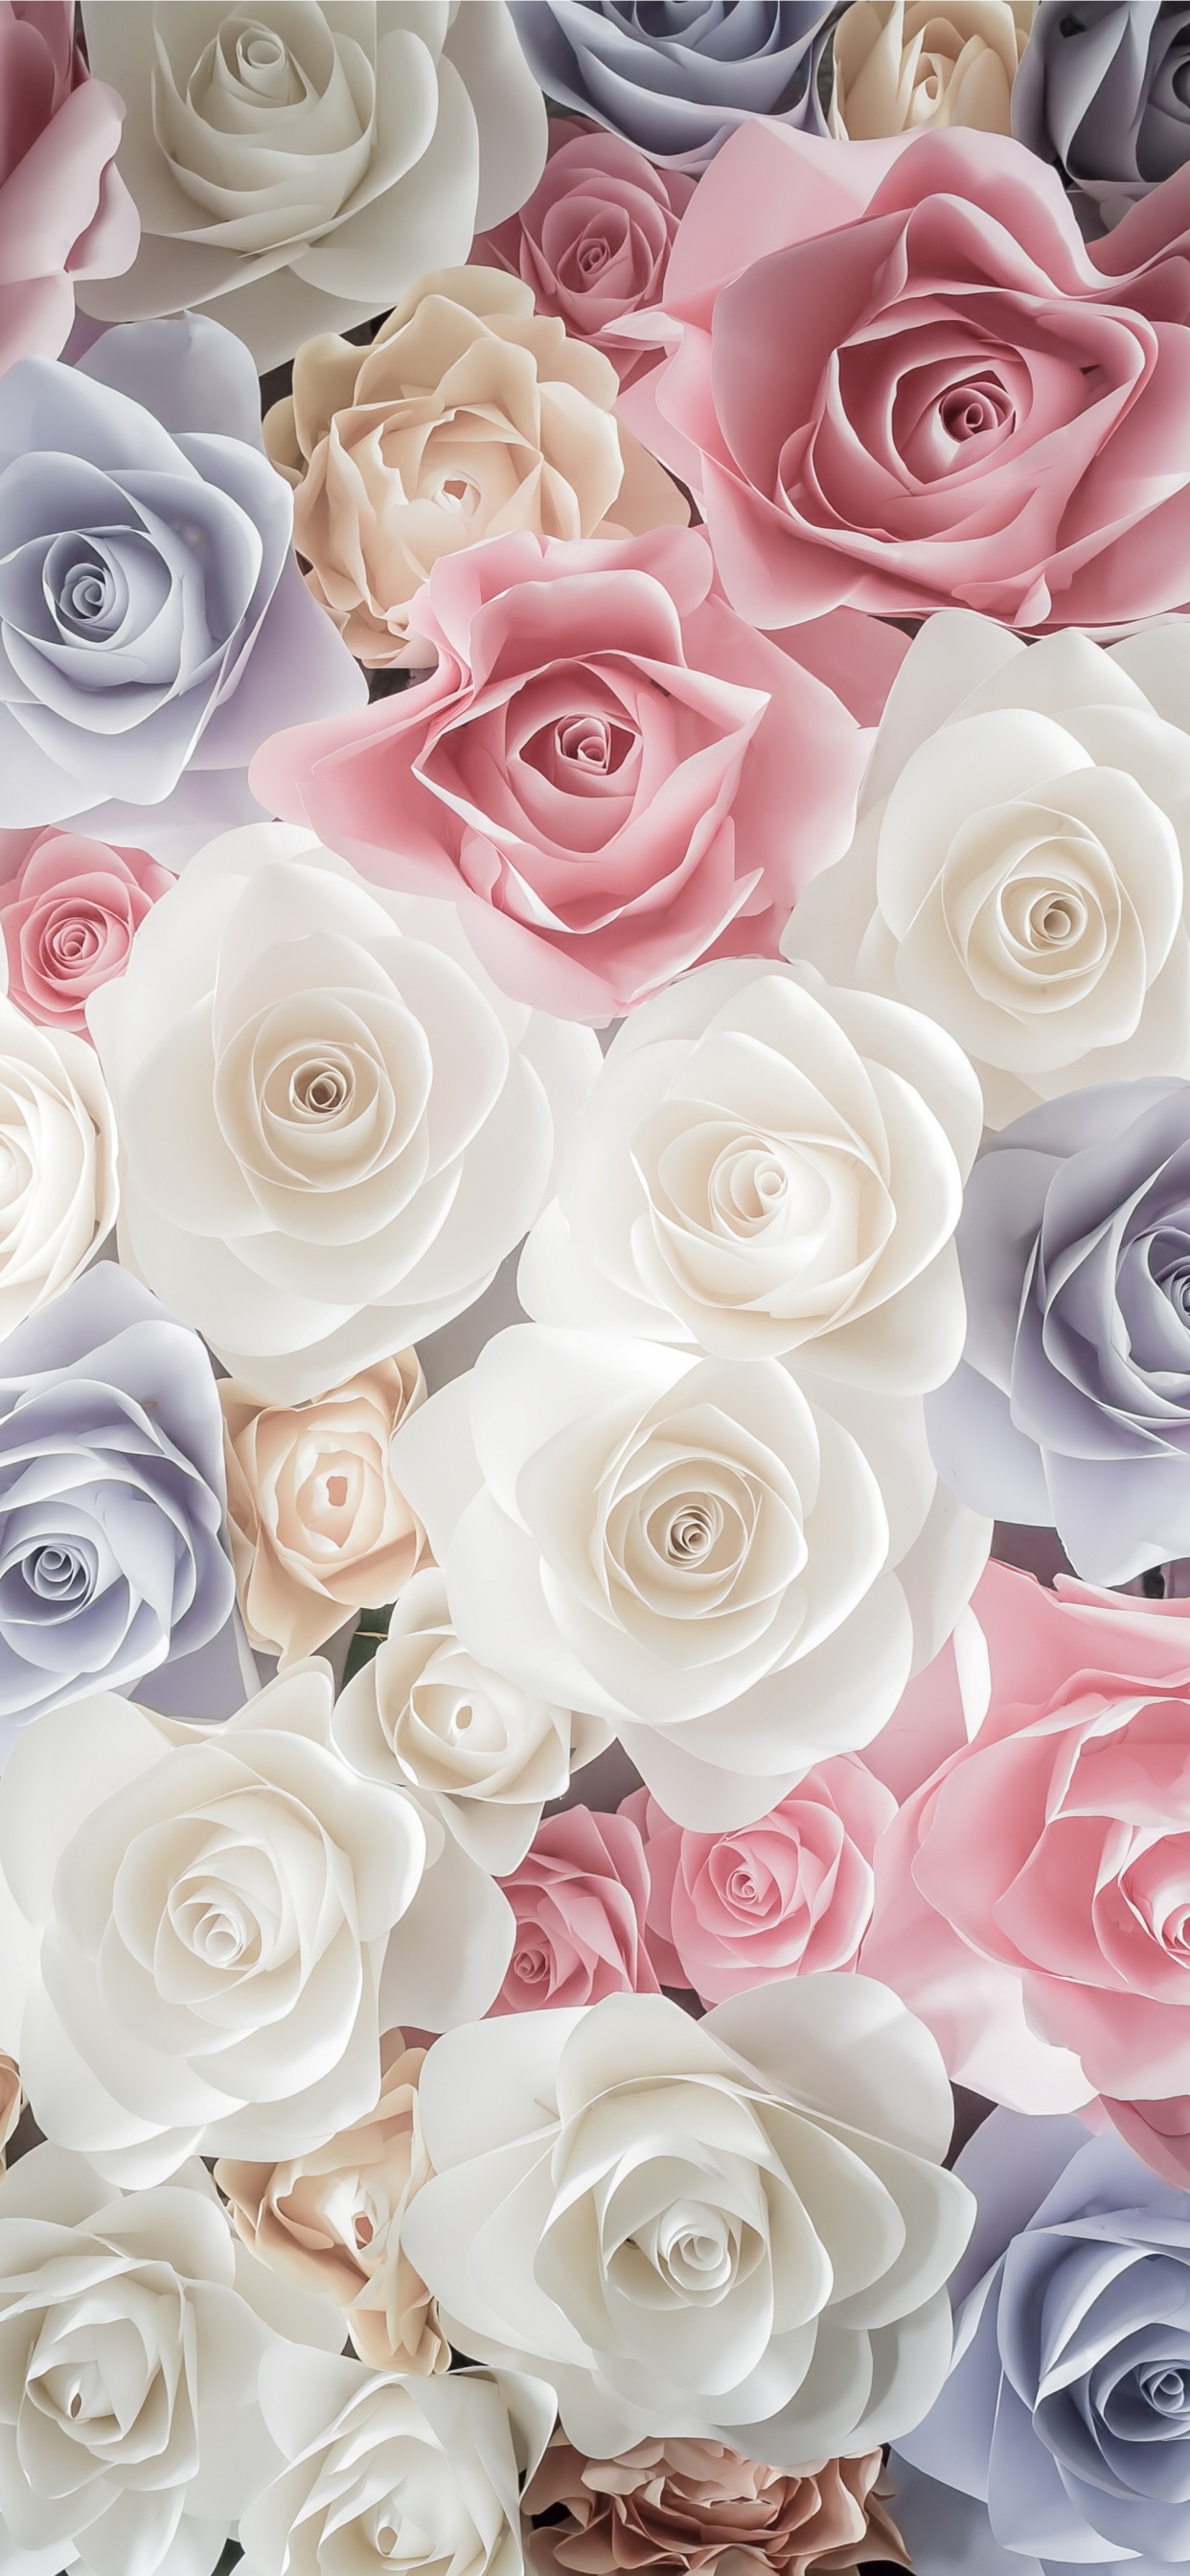 玫瑰花园, 切花, 粉红色, 玫瑰家庭, 花卉设计 壁纸 1242x2688 允许